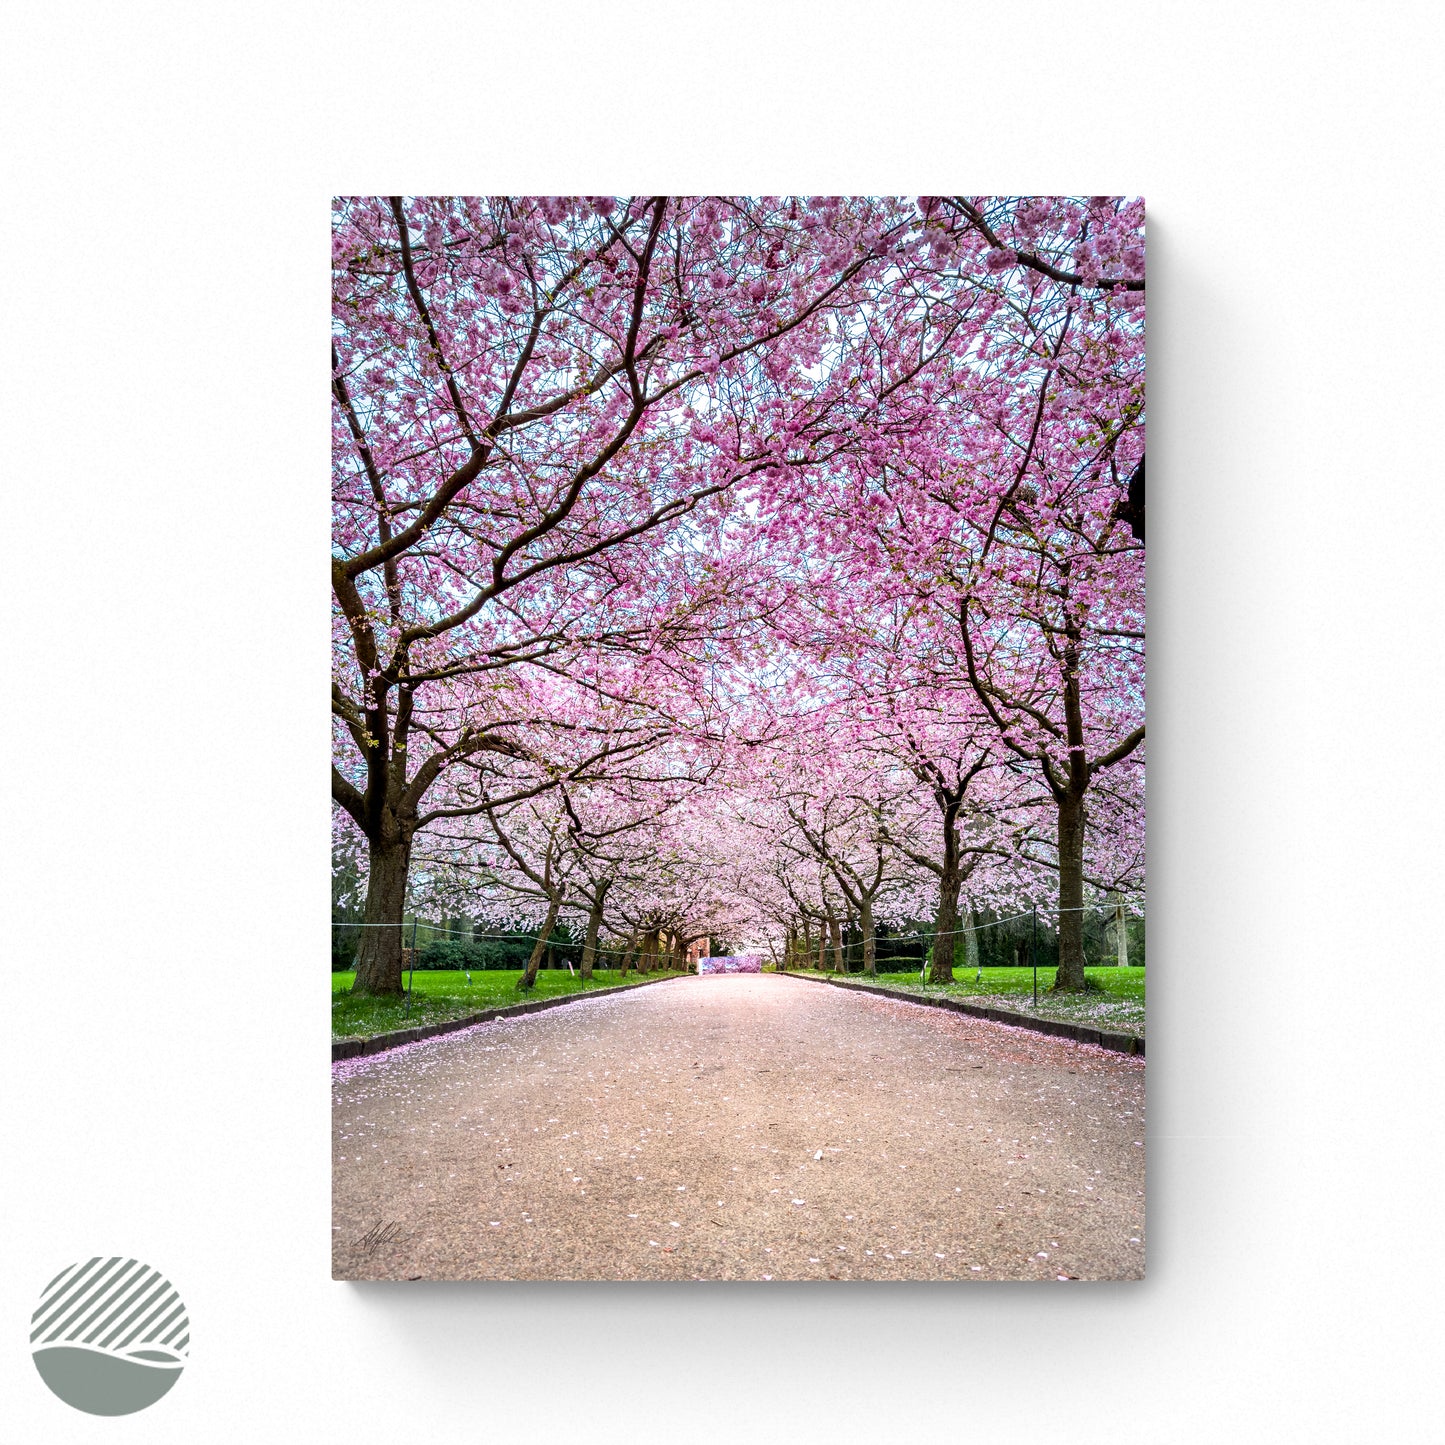 Sakura - Path of Spring photo print by Alantherock - 80cmx60cm 